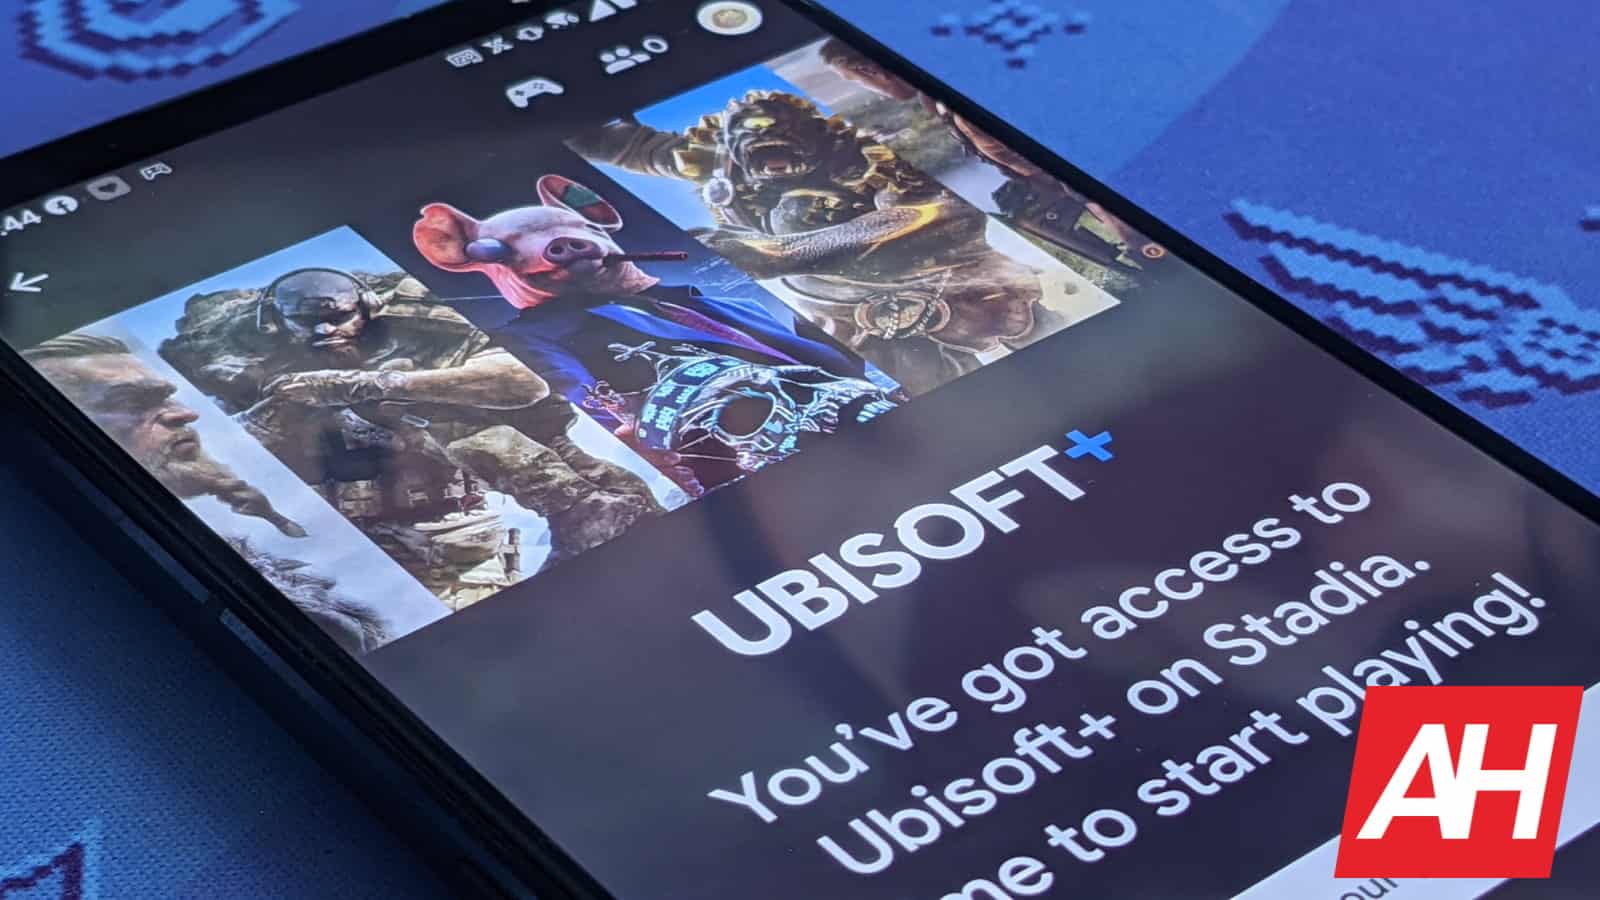 Berichten zufolge ist Ubisoft Opfer einer Datenpanne von etwa 900 GB geworden